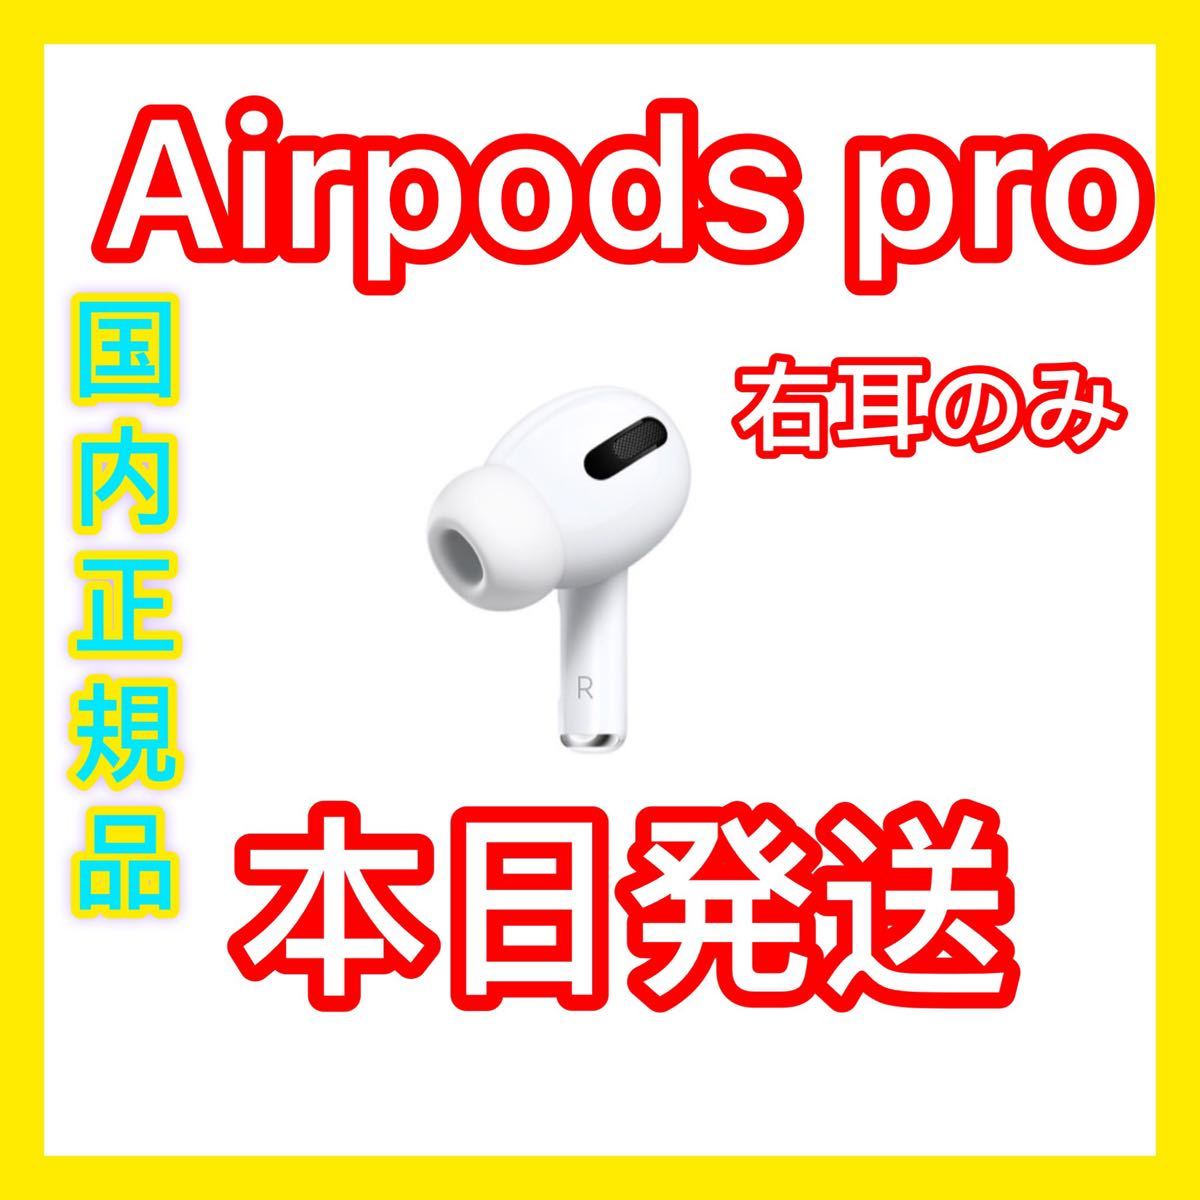 新品 エアーポッズ プロ 右耳のみ Apple国内正規品 AirPods Pro